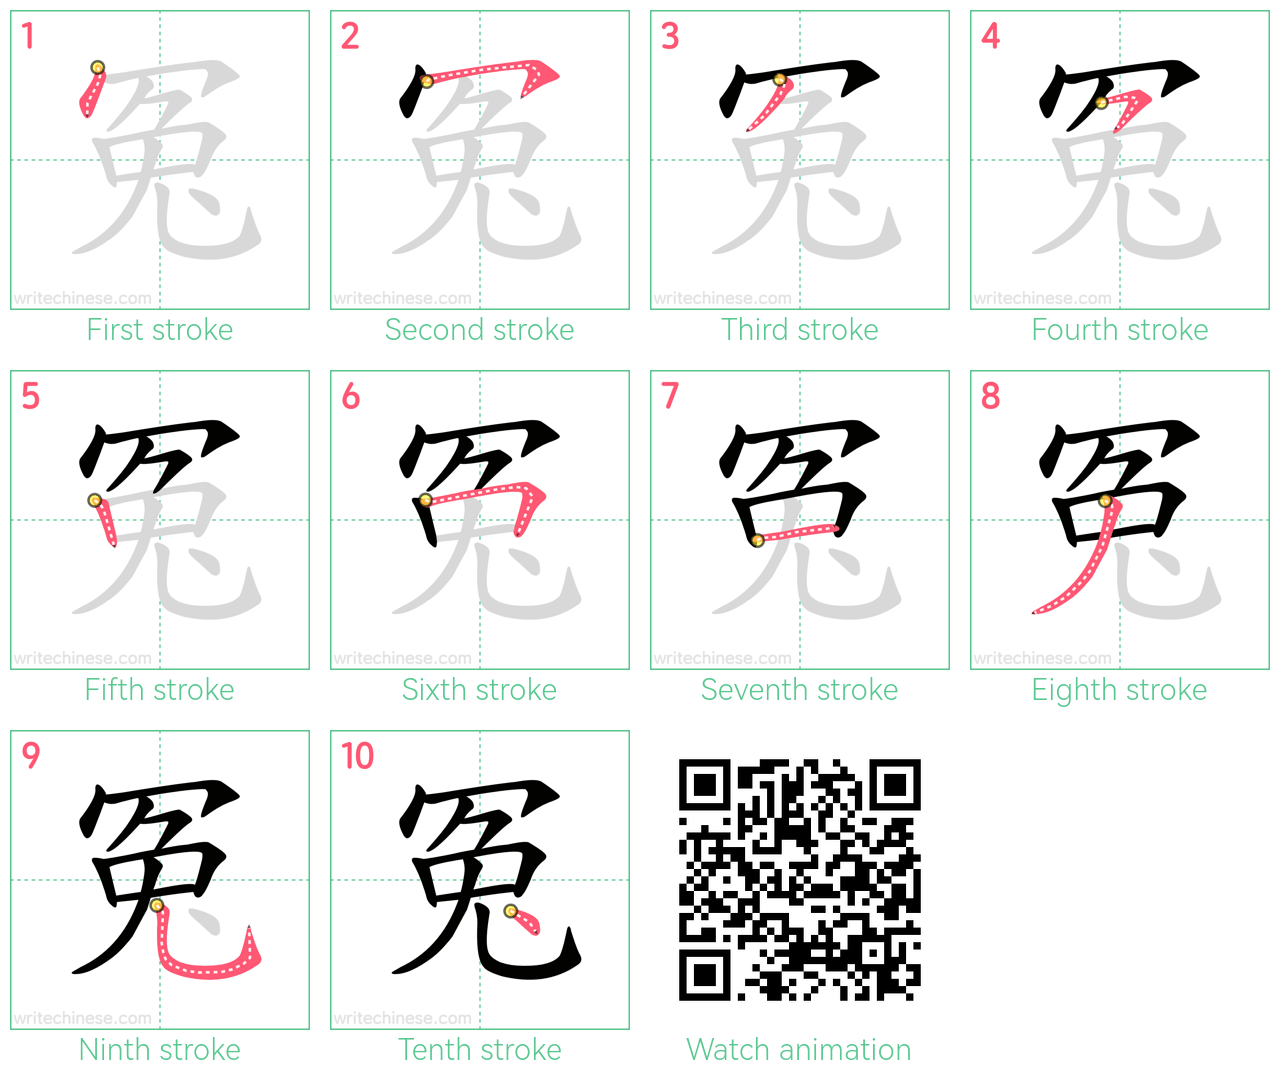 冤 step-by-step stroke order diagrams